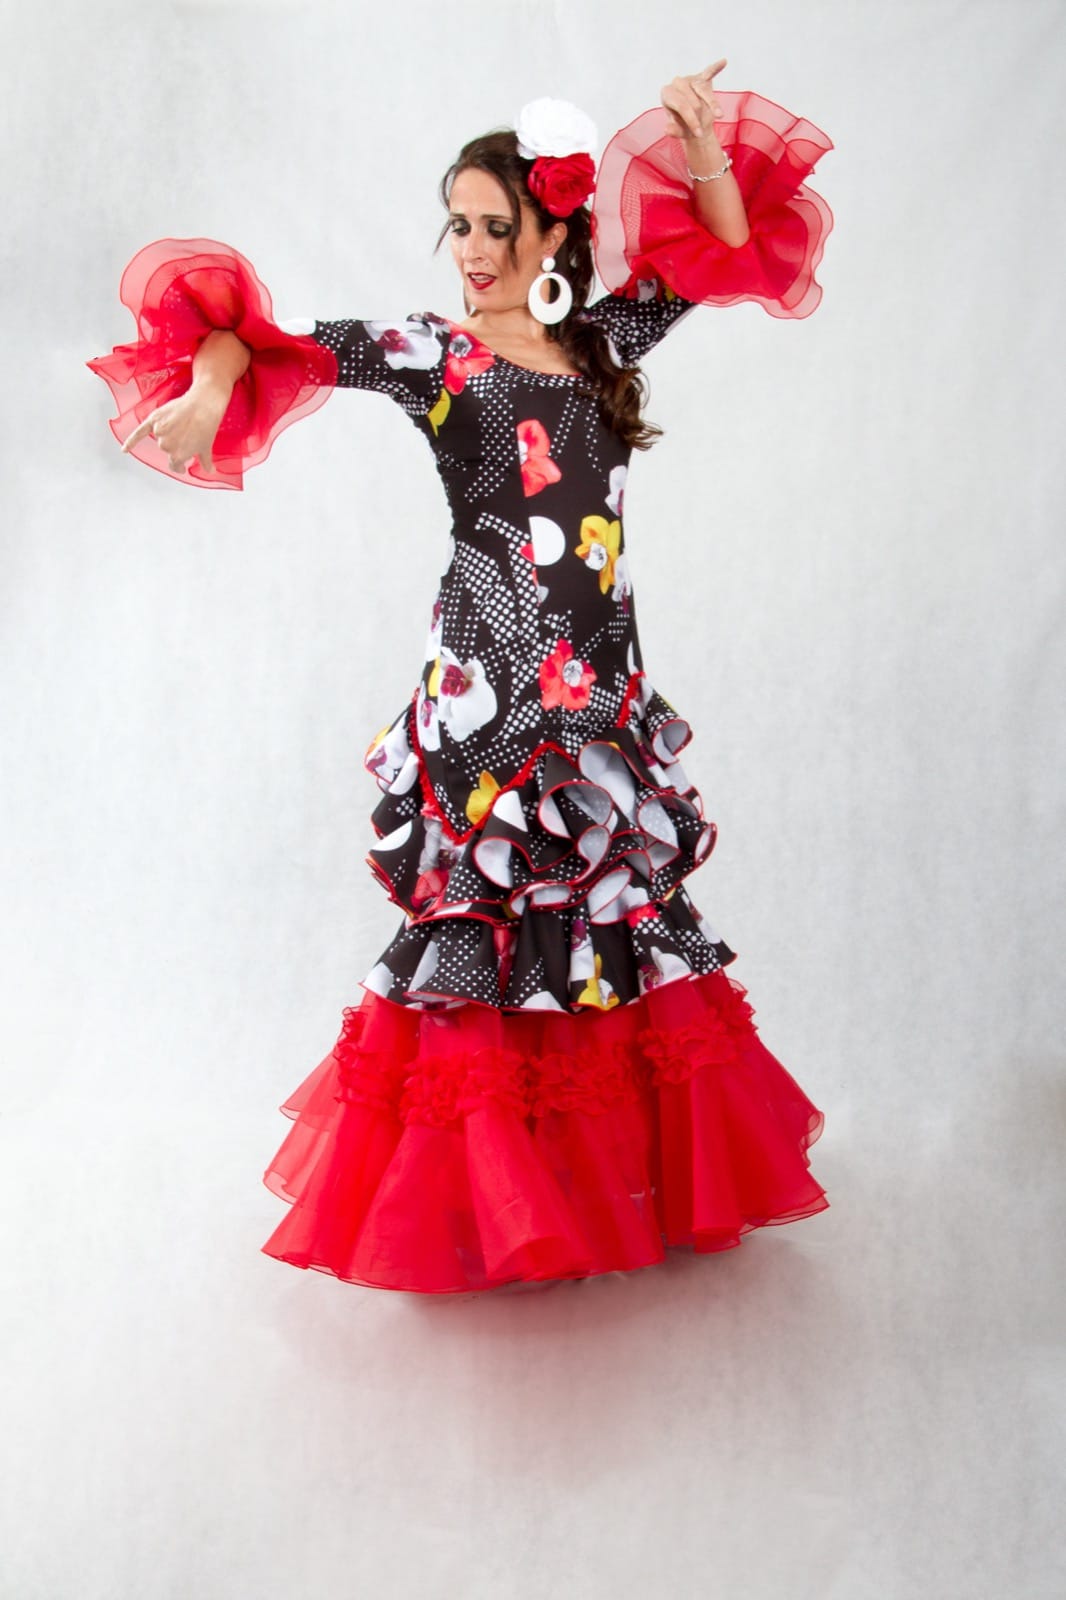 Falda de flamenco profesional para danza flamenco o sevillanas -  México